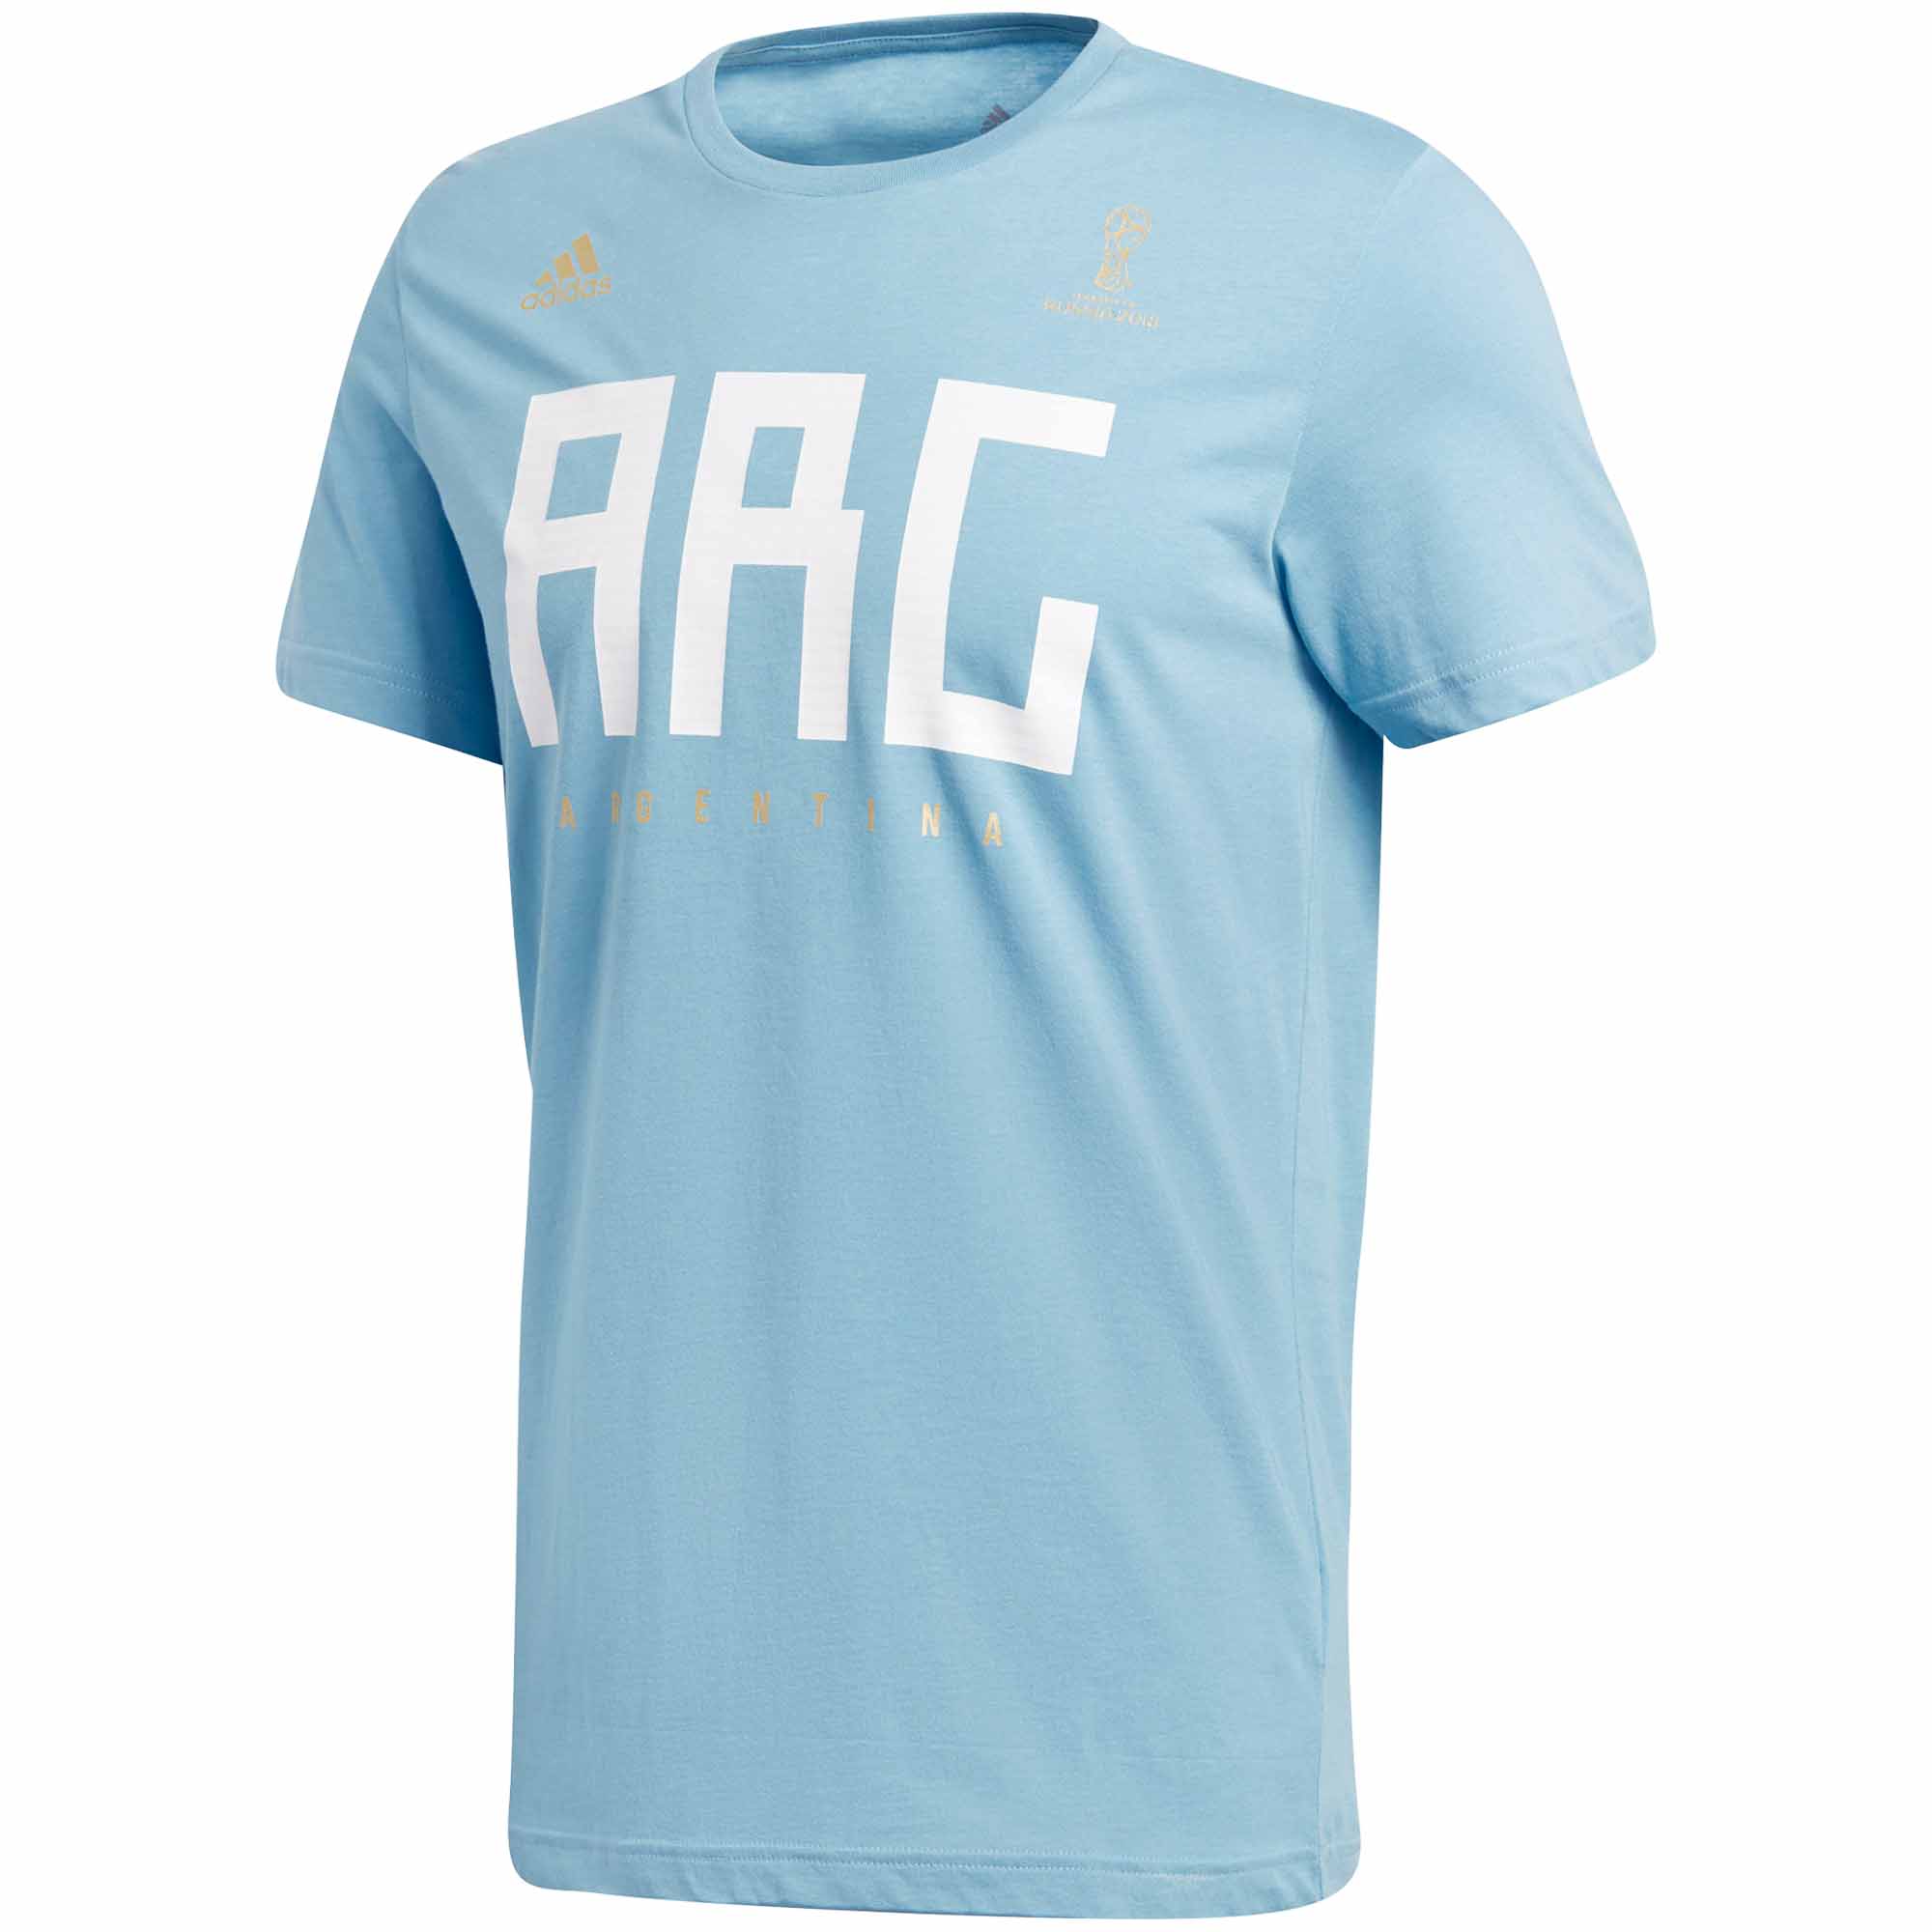 adidas t shirt argentina